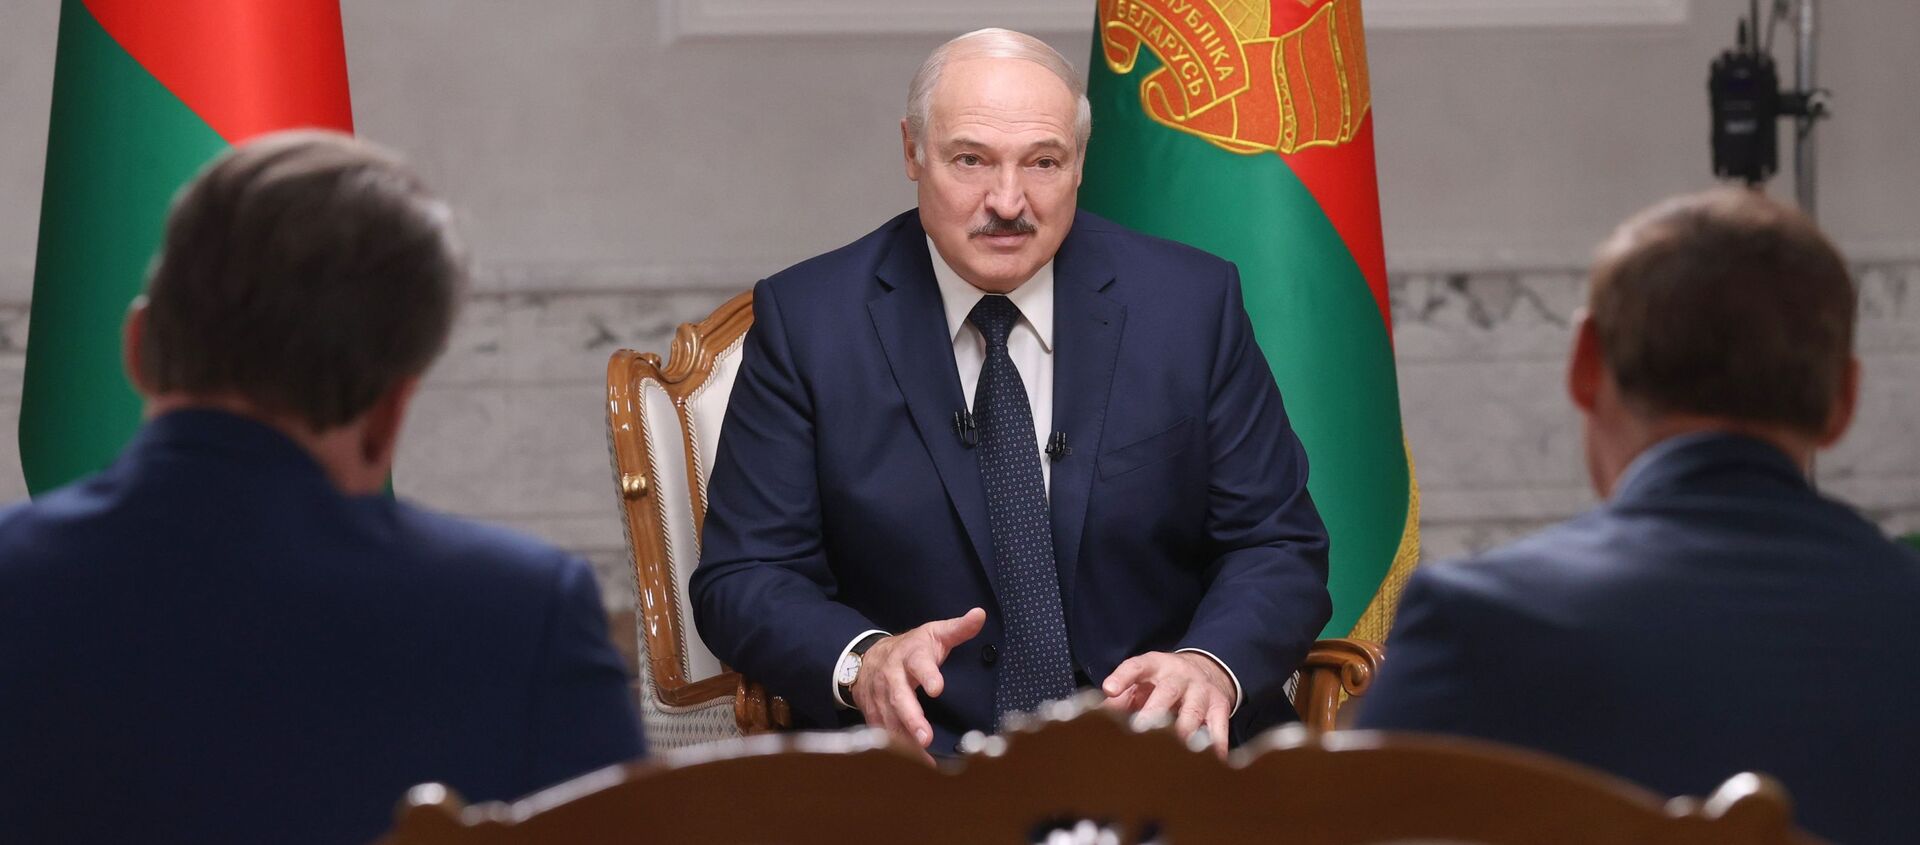 Президент Белоруссии А. Лукашенко дал интервью российским журналистам - Sputnik Армения, 1920, 24.04.2021